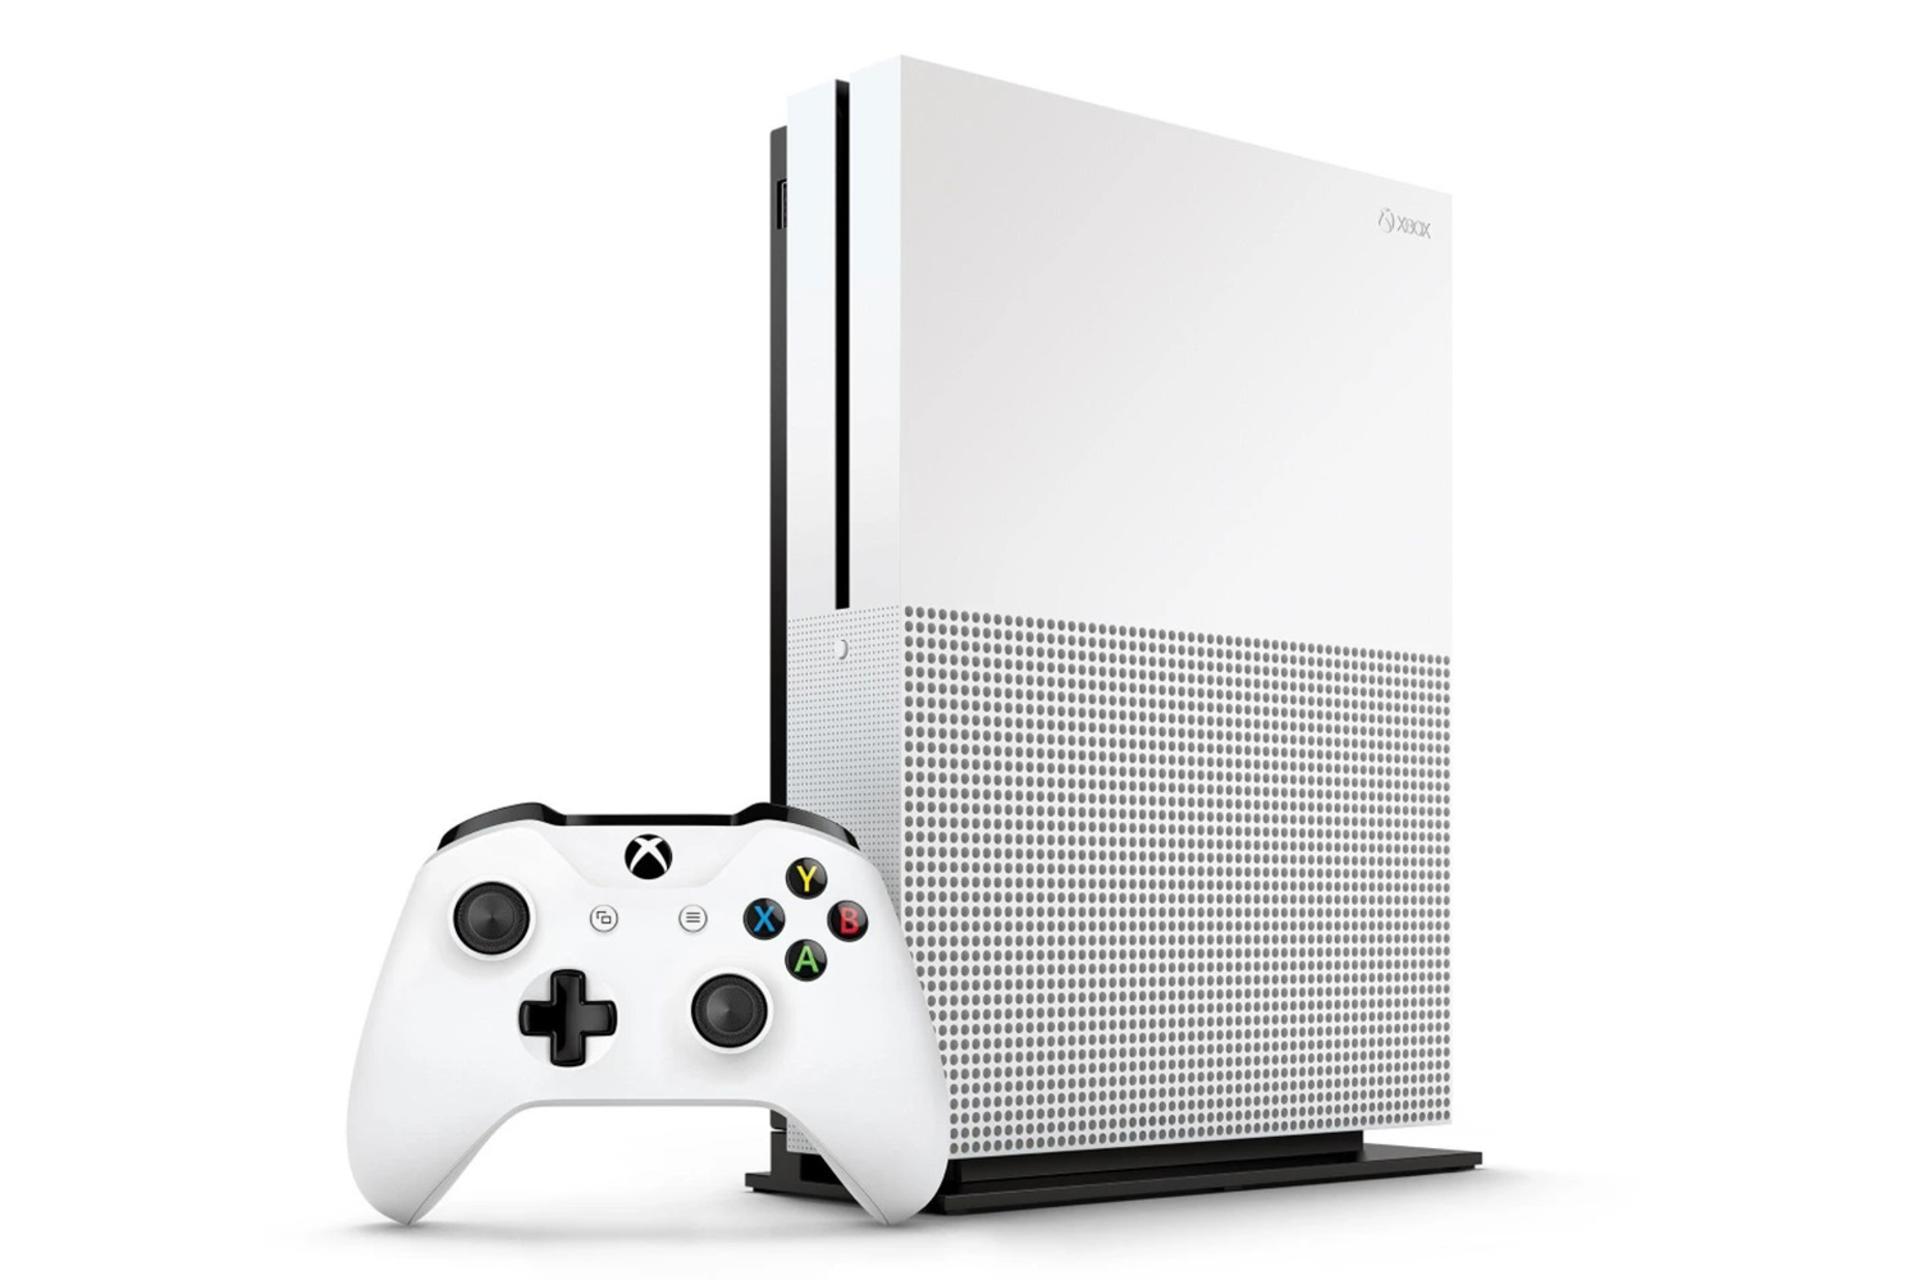 مرجع متخصصين ايران كنسول مايكروسافت ايكس باكس وان اس - نماي جلو و رنگ سفيد با دسته / Xbox One S